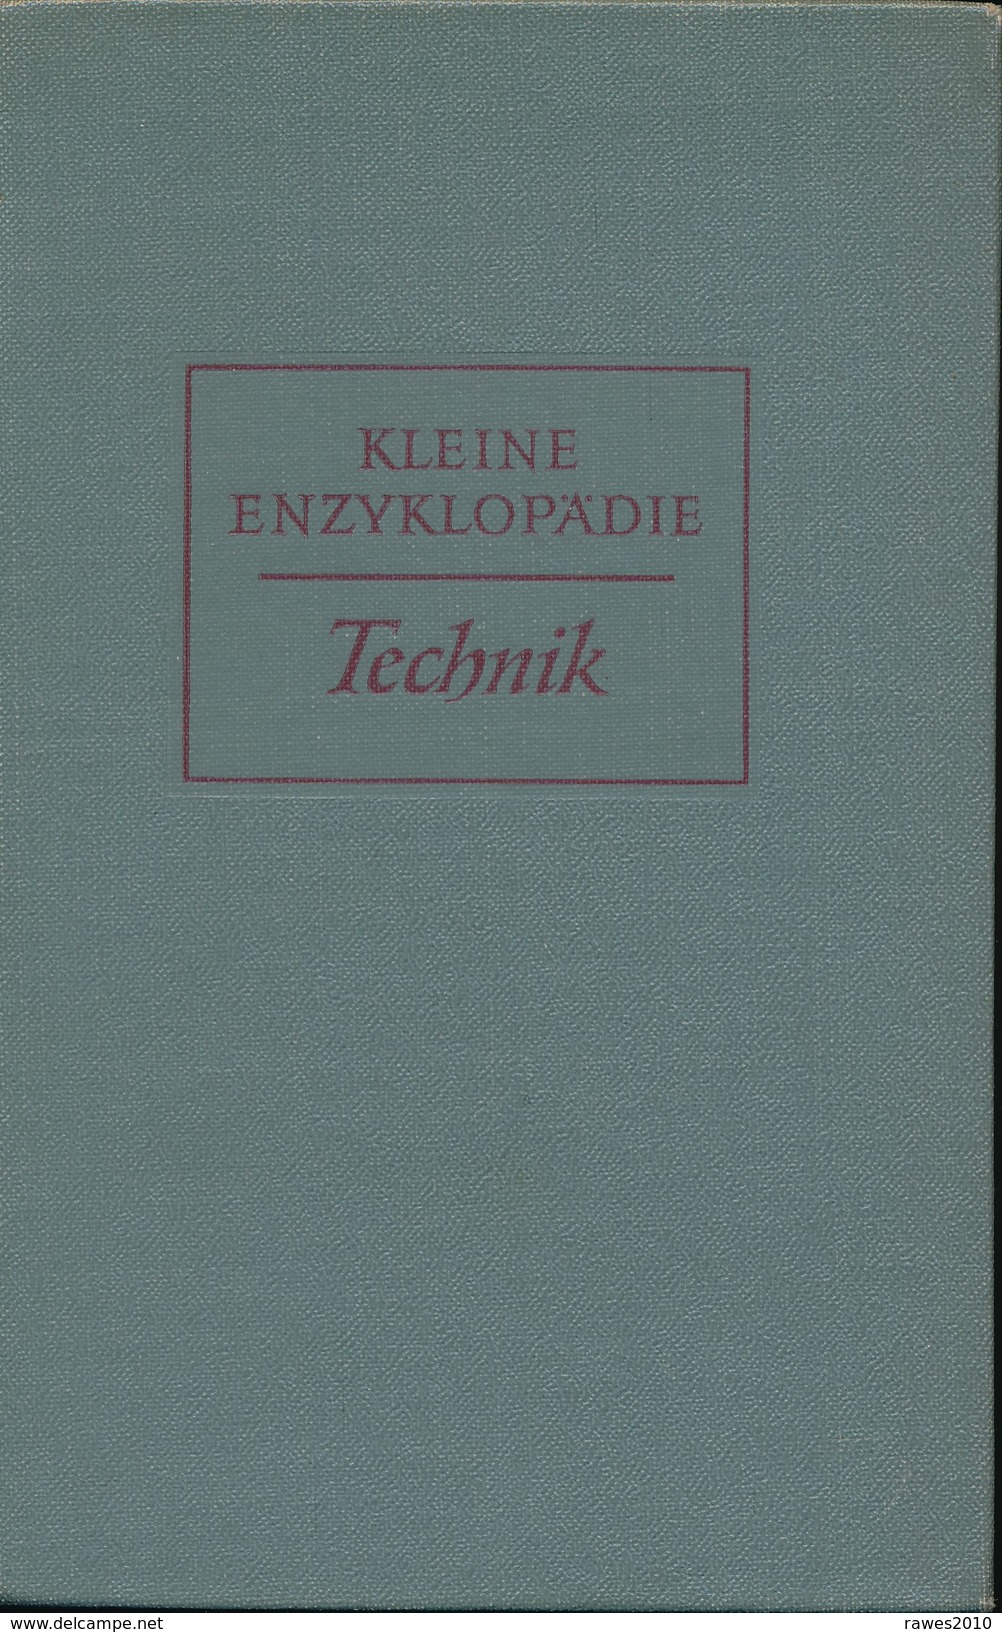 Buch: Kleine Enzyklopädie Technik Verlag Enzyklopädie Leipzig 1957 941 Seiten - Técnico